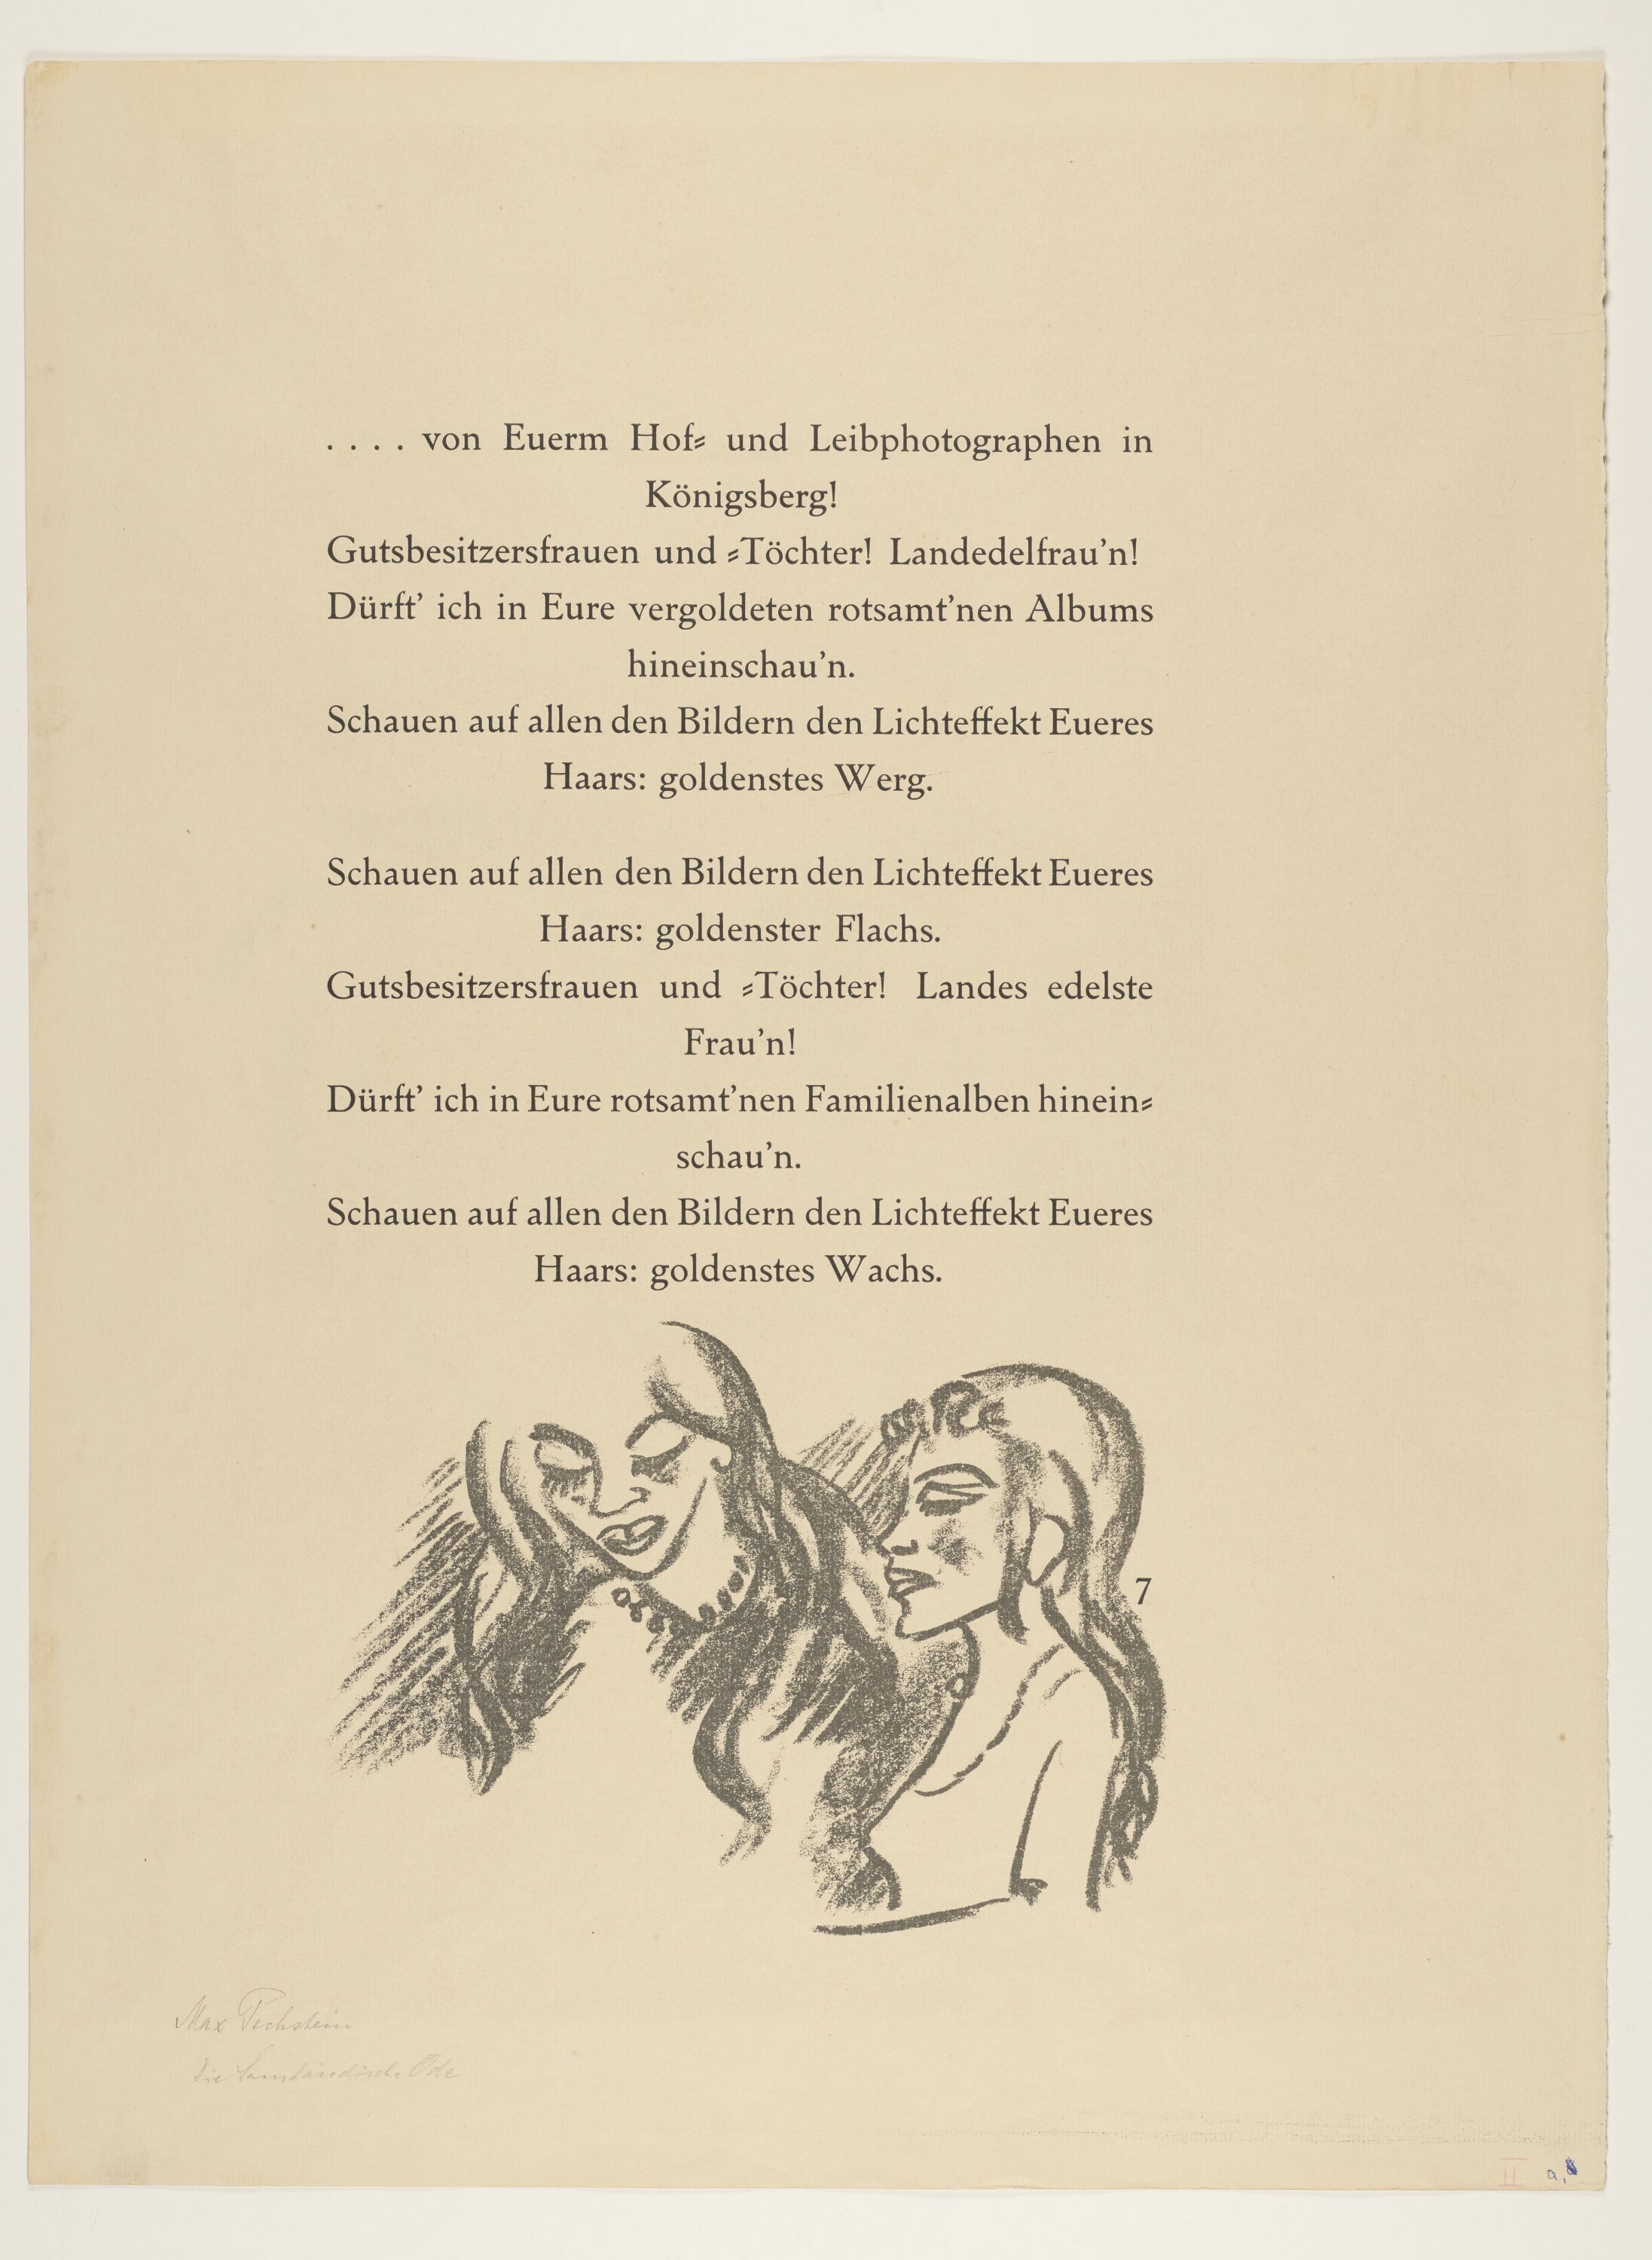 Frau und Mädchen, aus: Heinrich Lautensack: Paraphrasen zur Samländischen Ode, 21 Lithografien, Seite 7 (© Pechstein - Hamburg / Tökendorf, 2021 | VG Bild-Kunst, Bonn 2021 RR-F)